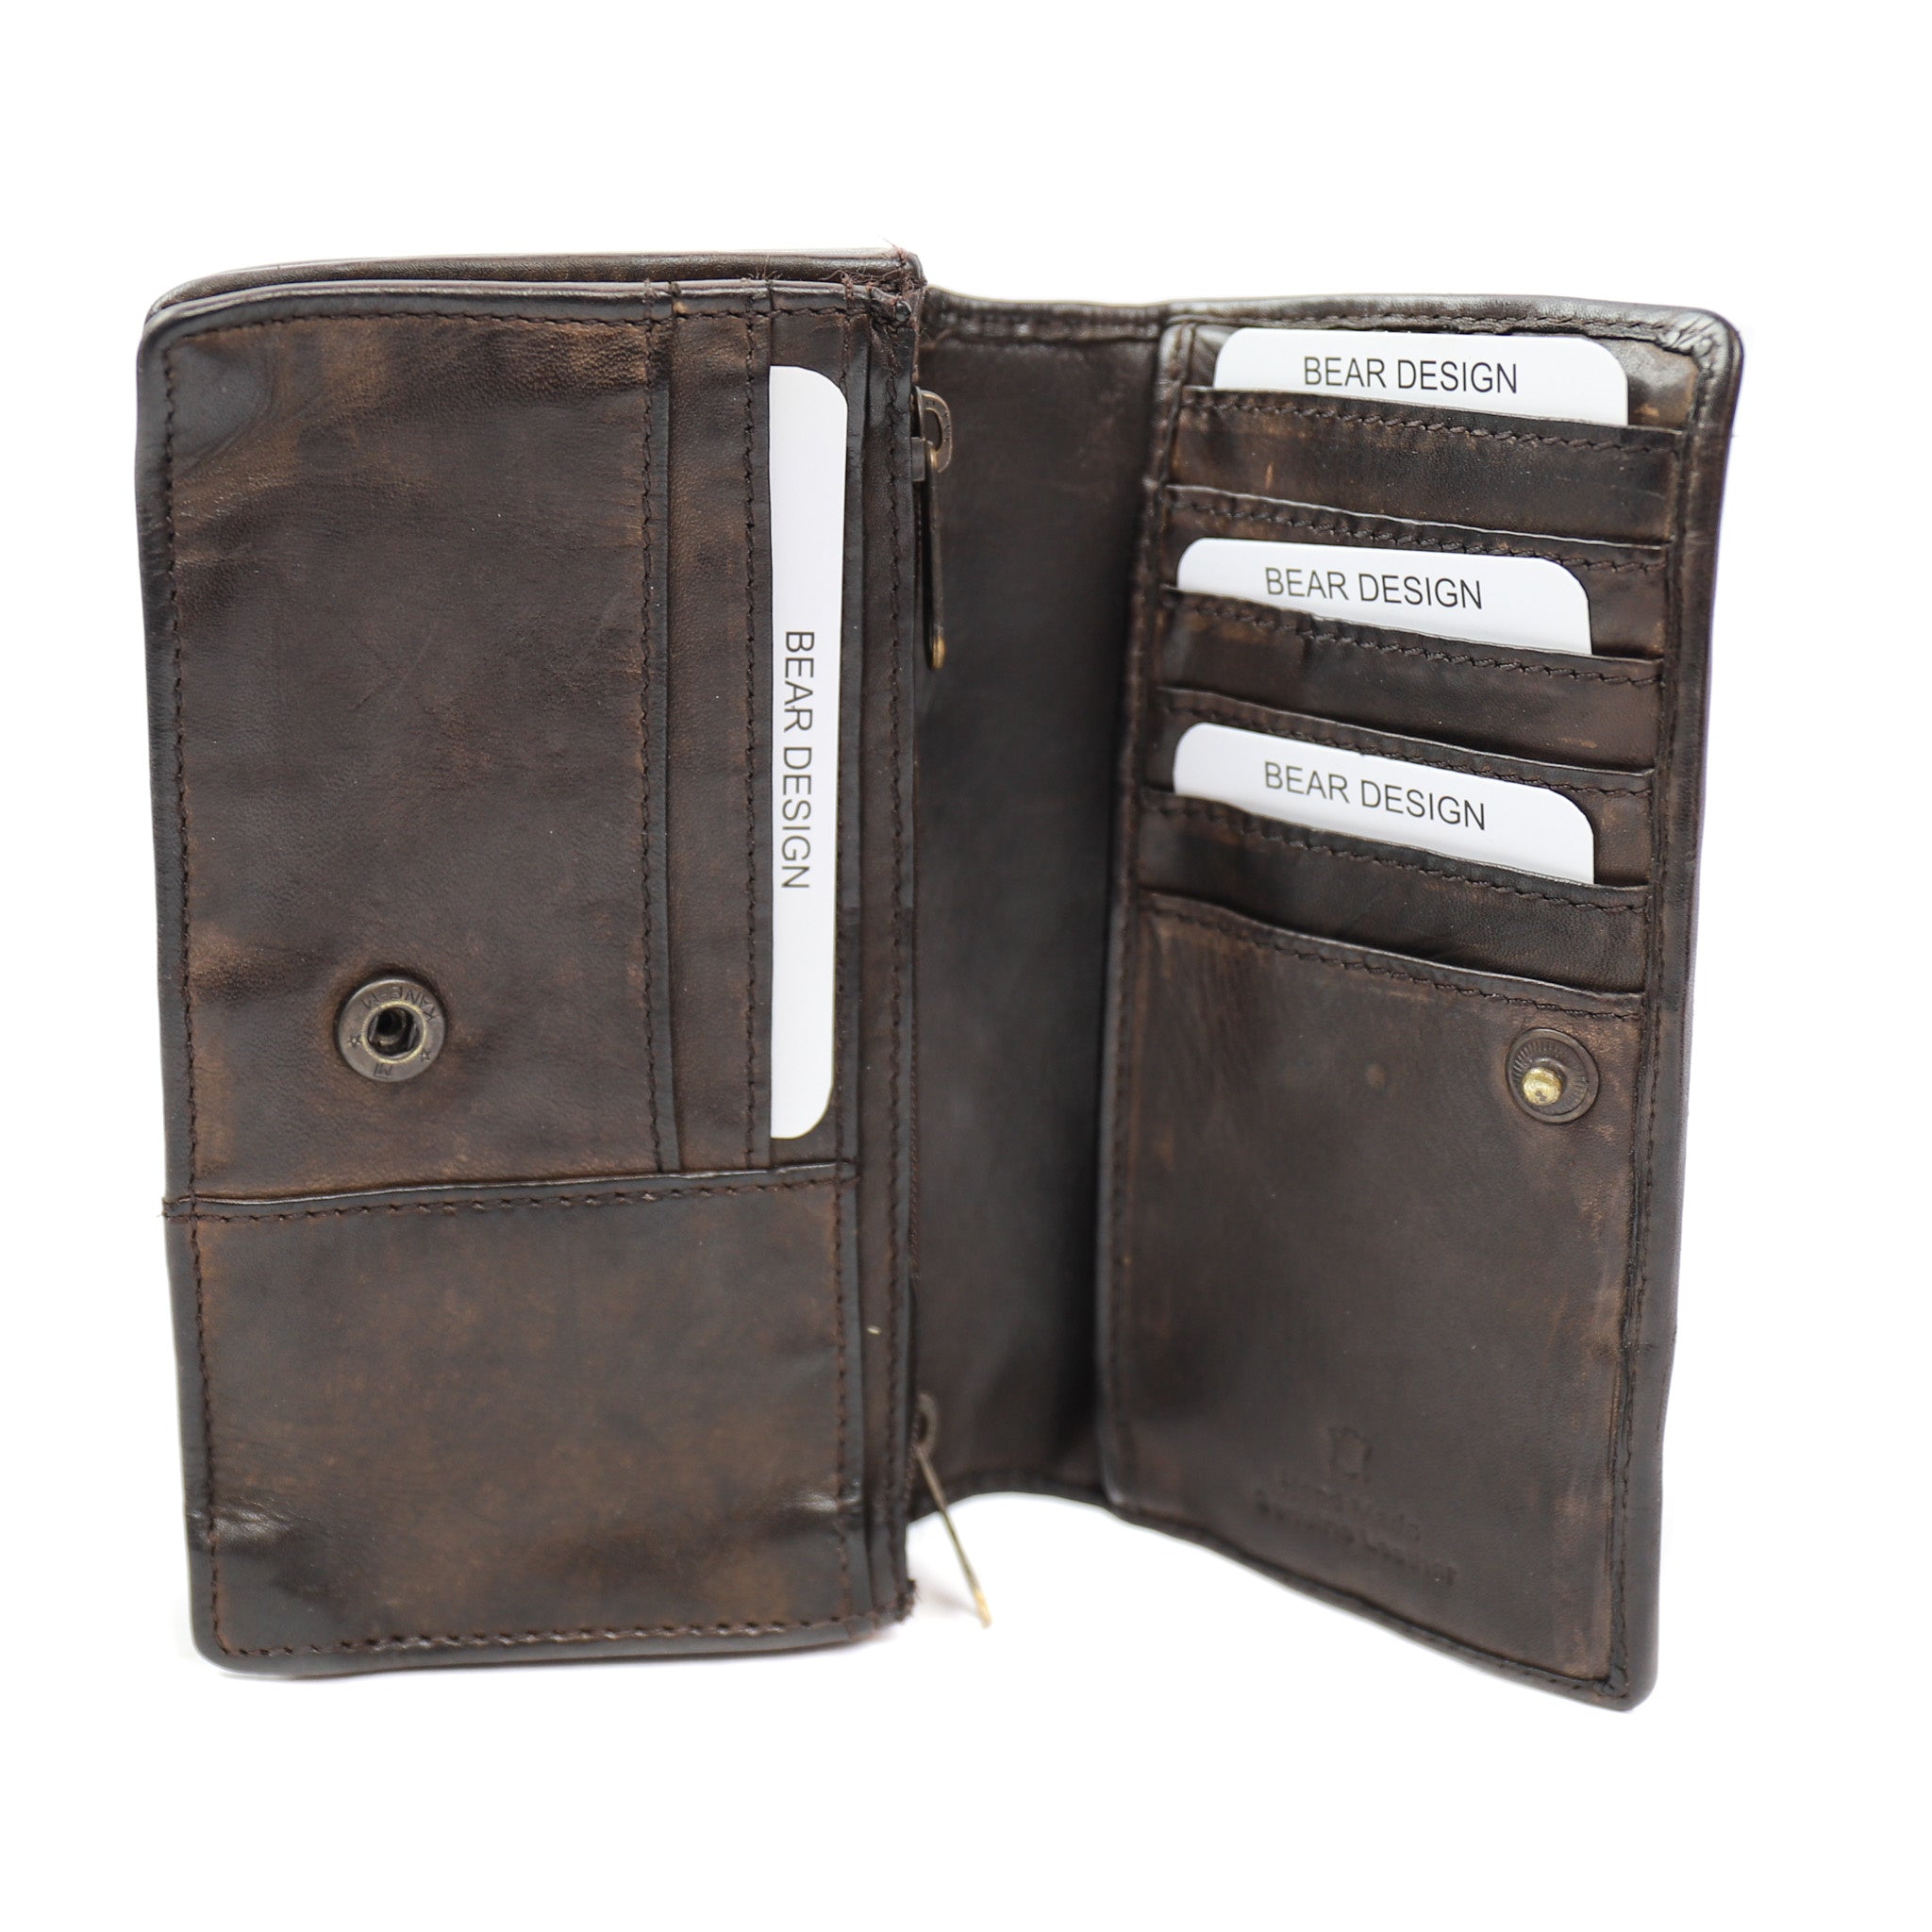 Wrap wallet 'Emma' dark brown - CL 782 RFID